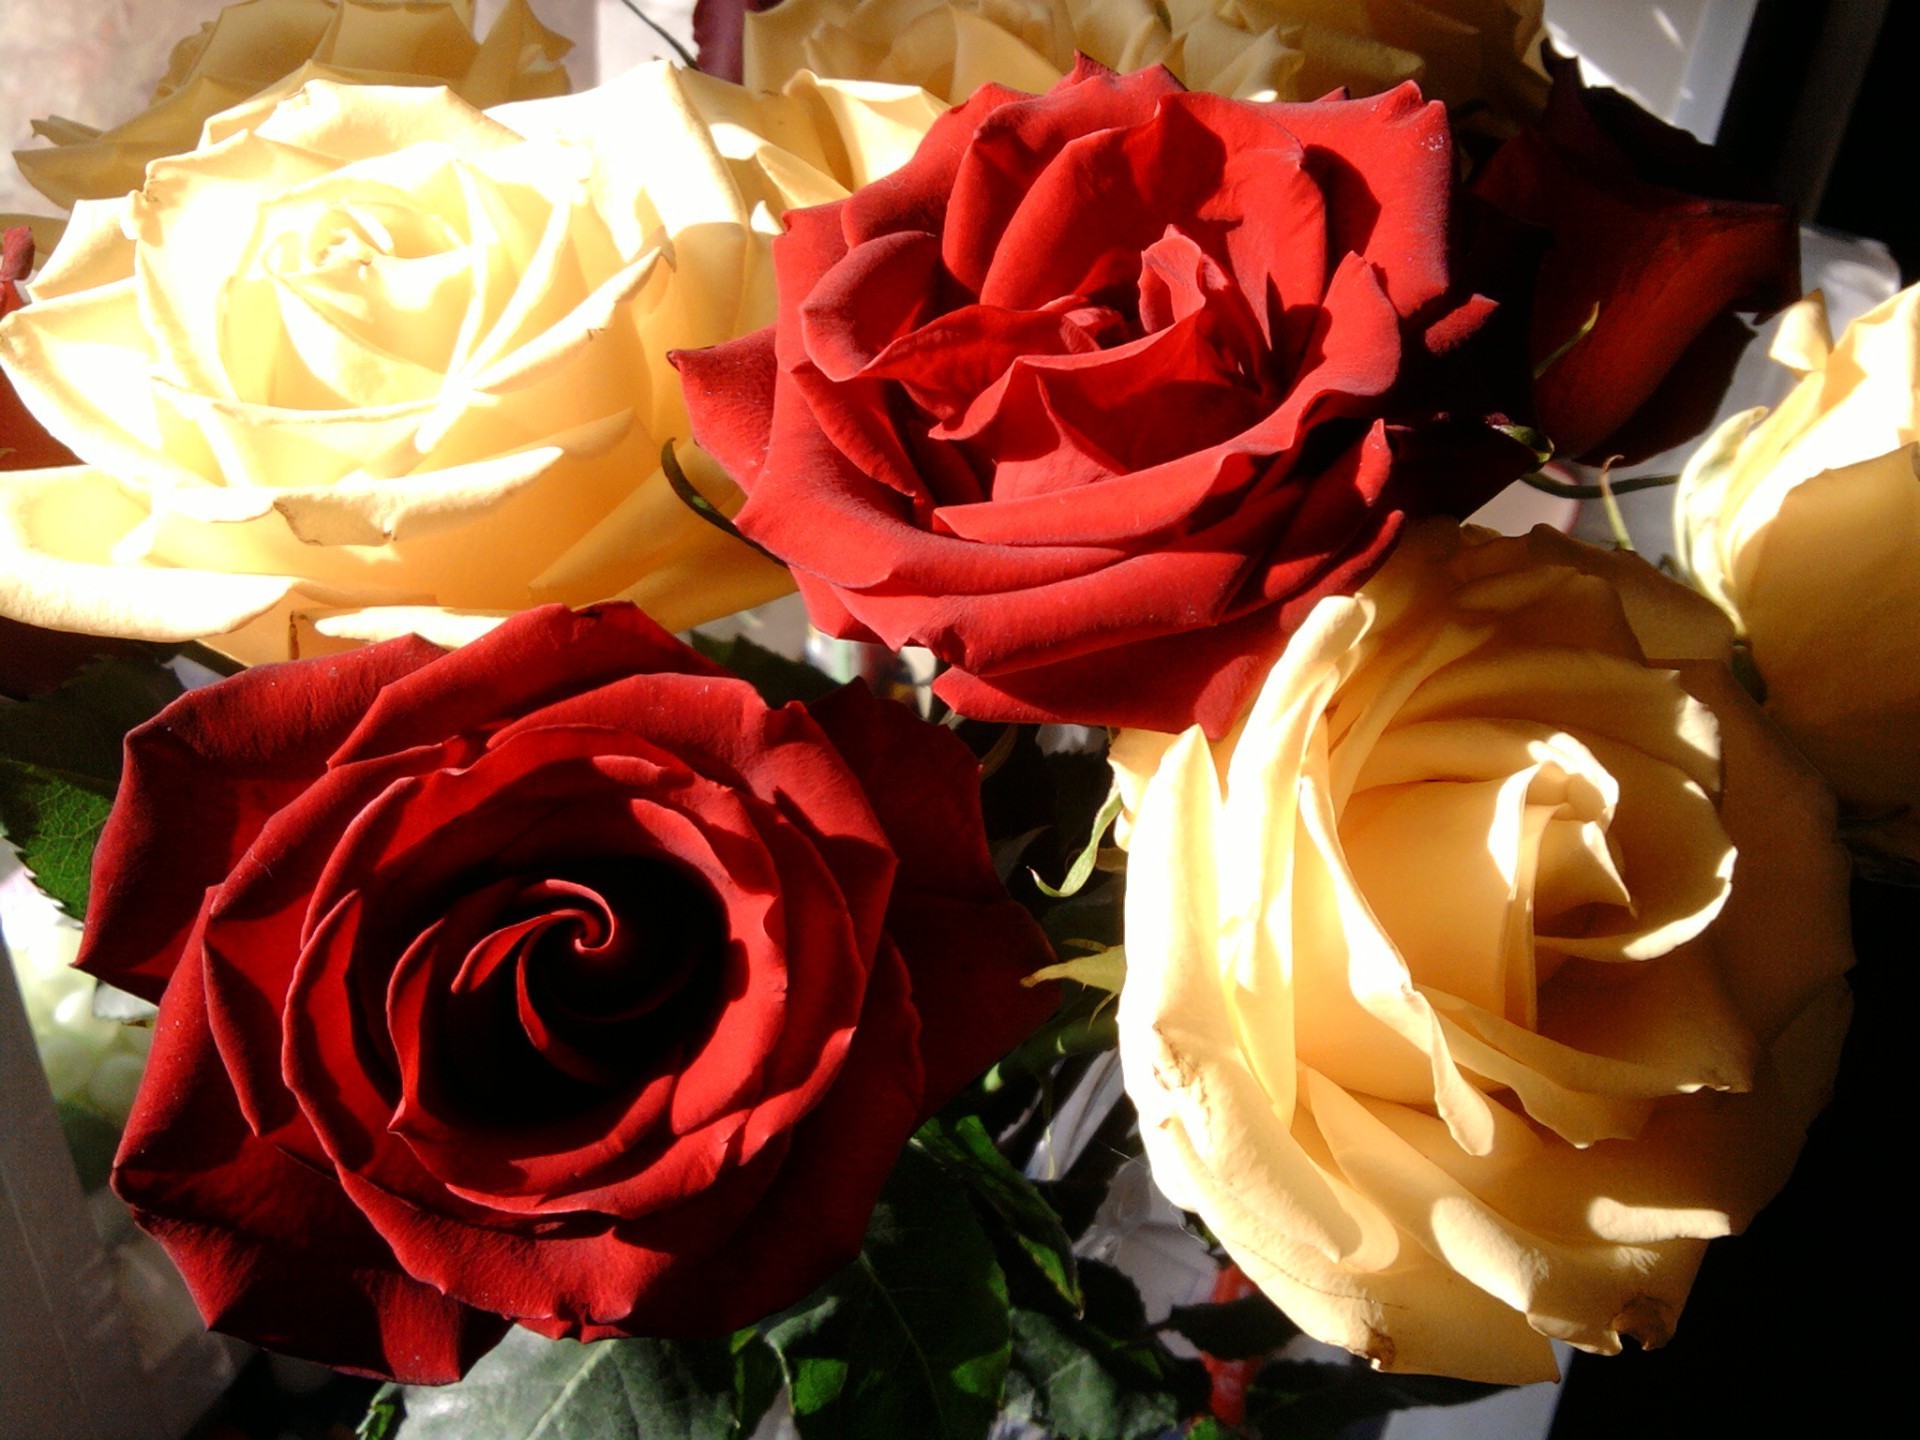 цветы роза любовь романтика свадьба романтический цветок лепесток день рождения любовь букет подарок праздник юбилей цветочные лист